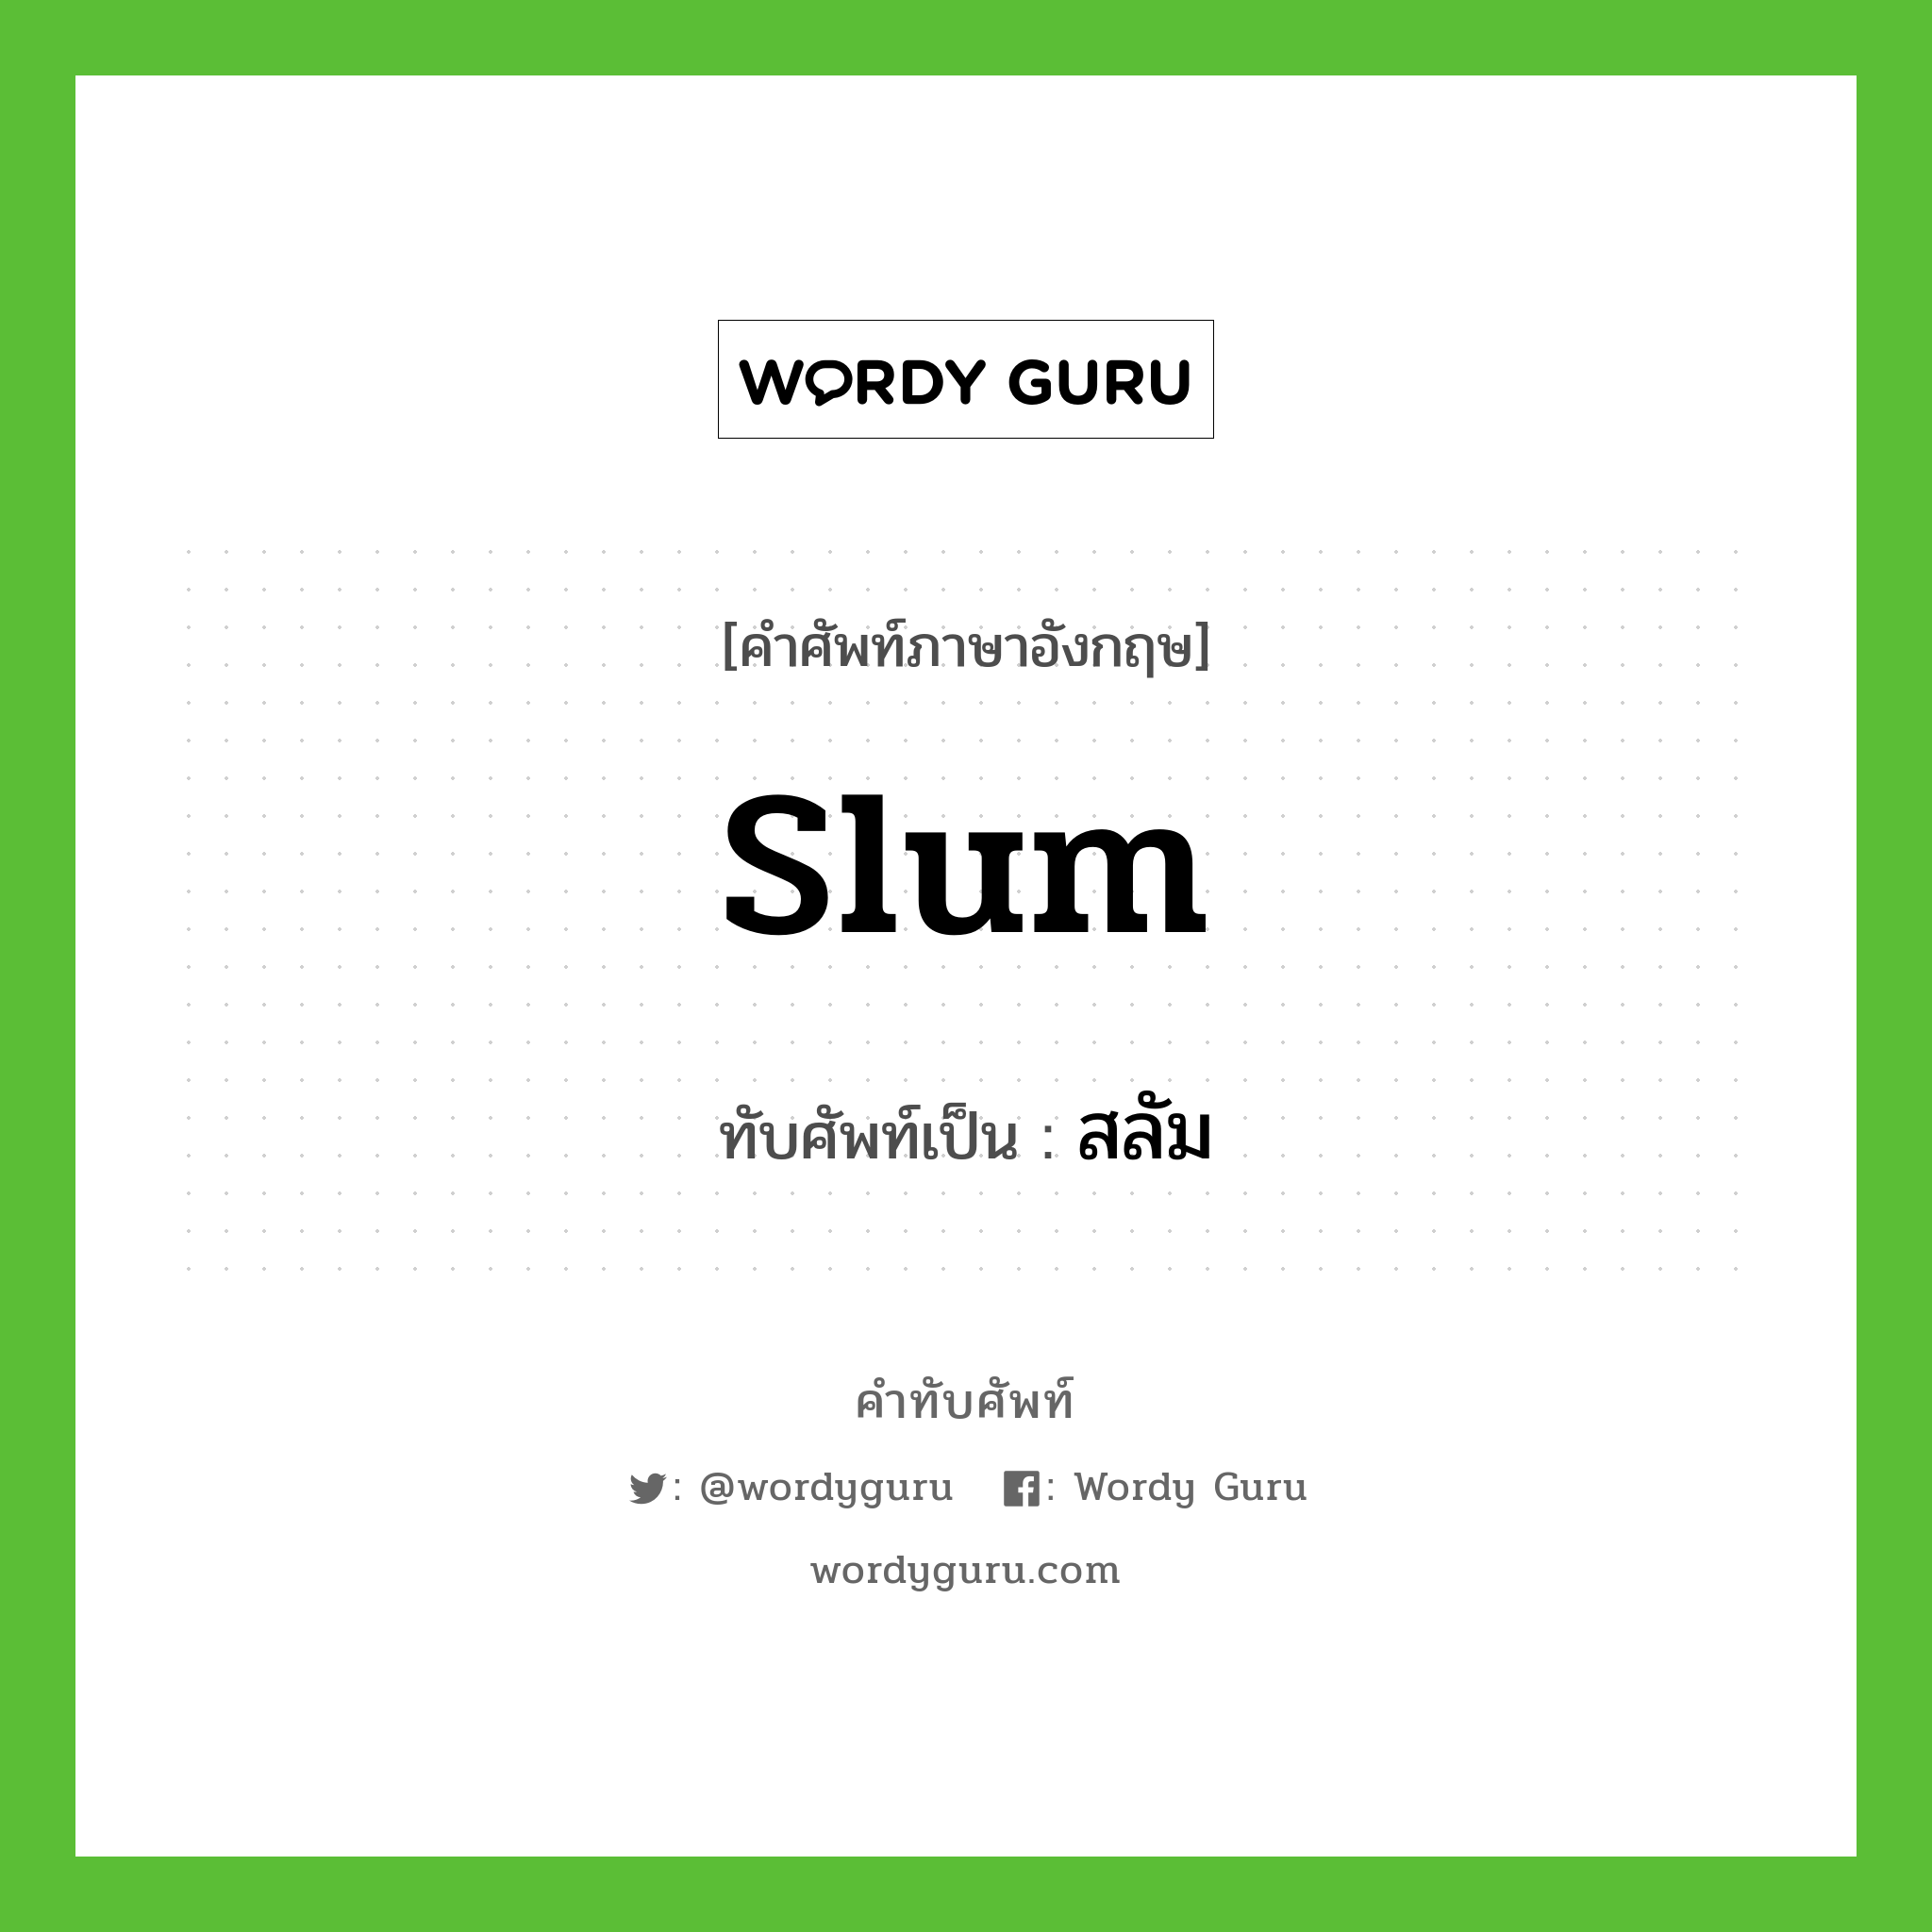 slum เขียนเป็นคำไทยว่าอะไร?, คำศัพท์ภาษาอังกฤษ slum ทับศัพท์เป็น สลัม